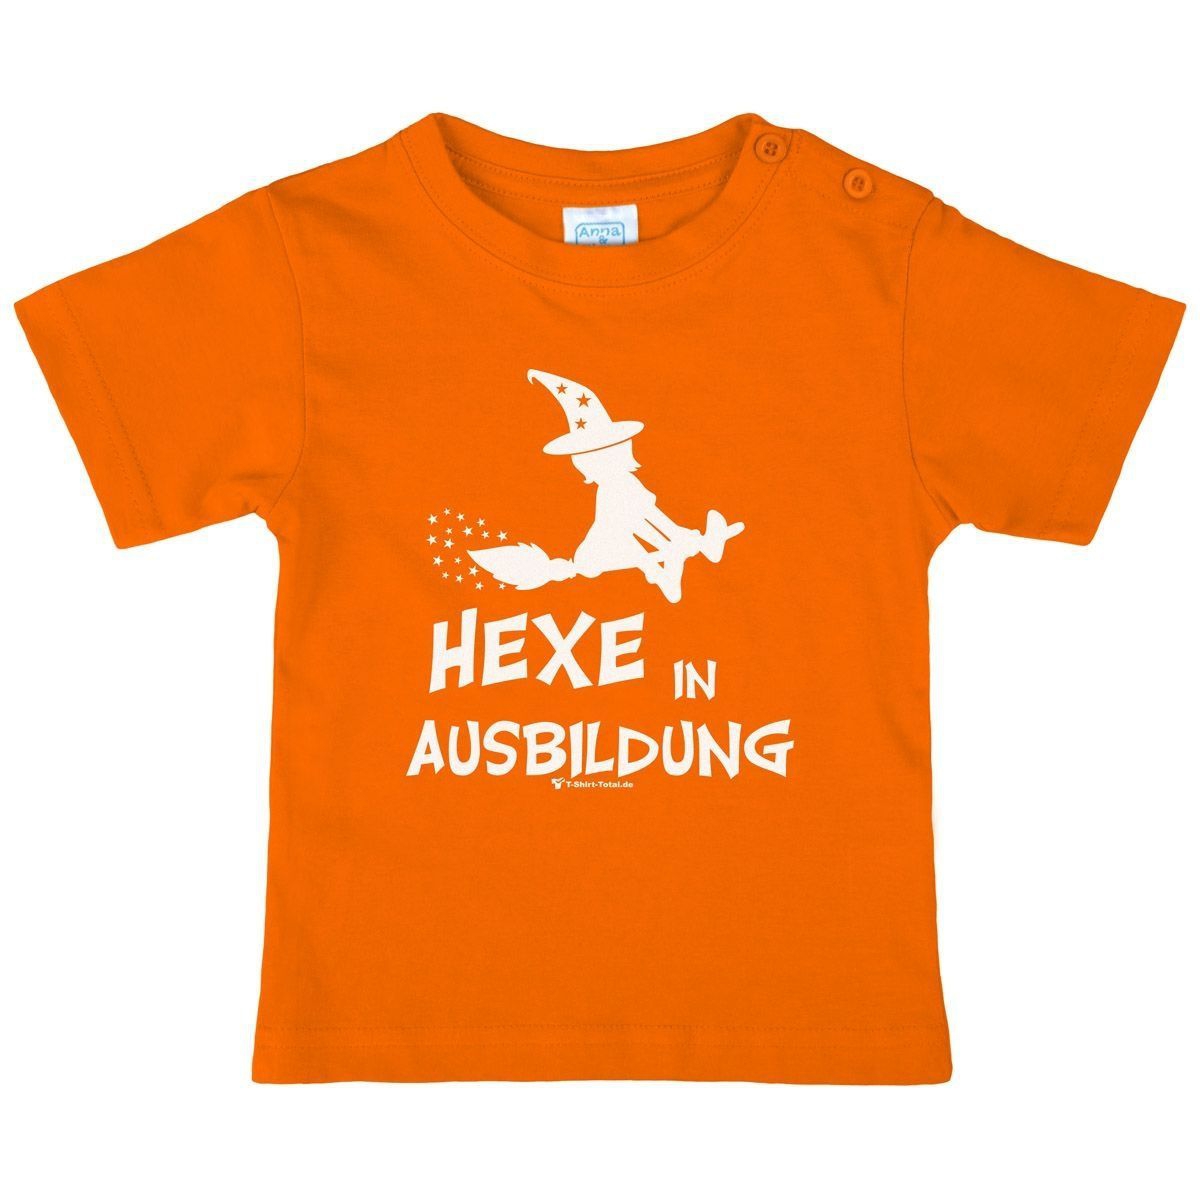 Hexe in Ausbildung Kinder T-Shirt orange 80 / 86